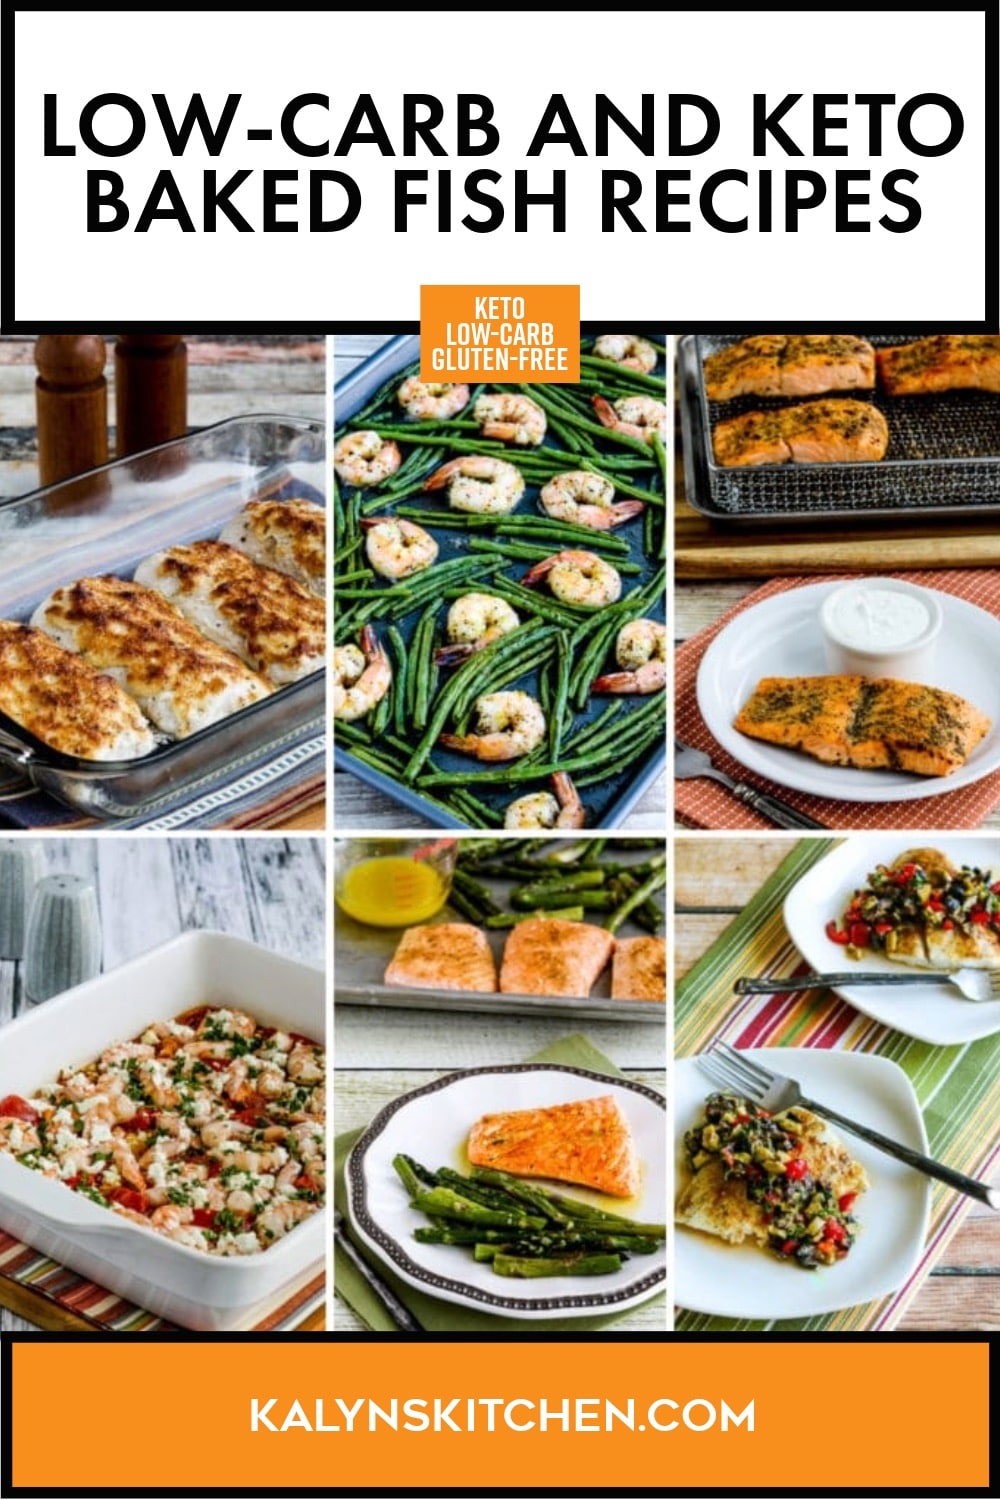 تصویر Pinterest از دستور العمل های ماهی پخته شده کم کربوهیدرات و کتو